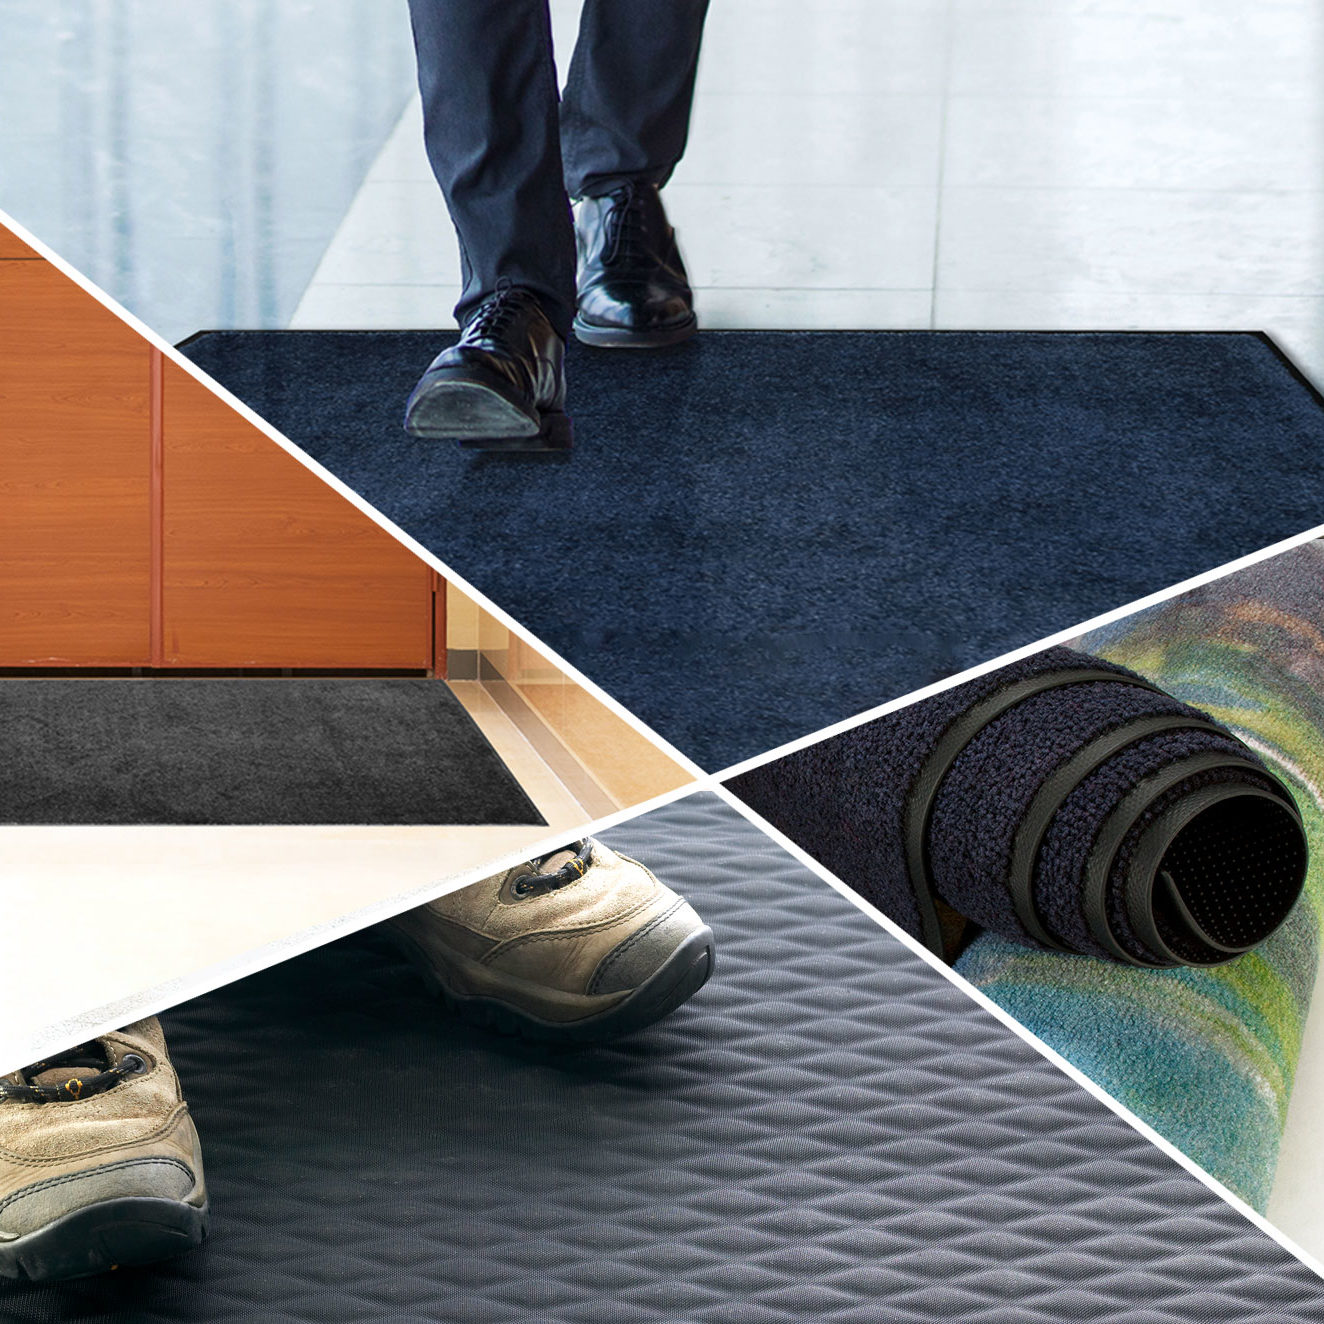 Lechner Services assortment of floor mat options carpeted runner and outdoor scraper mats